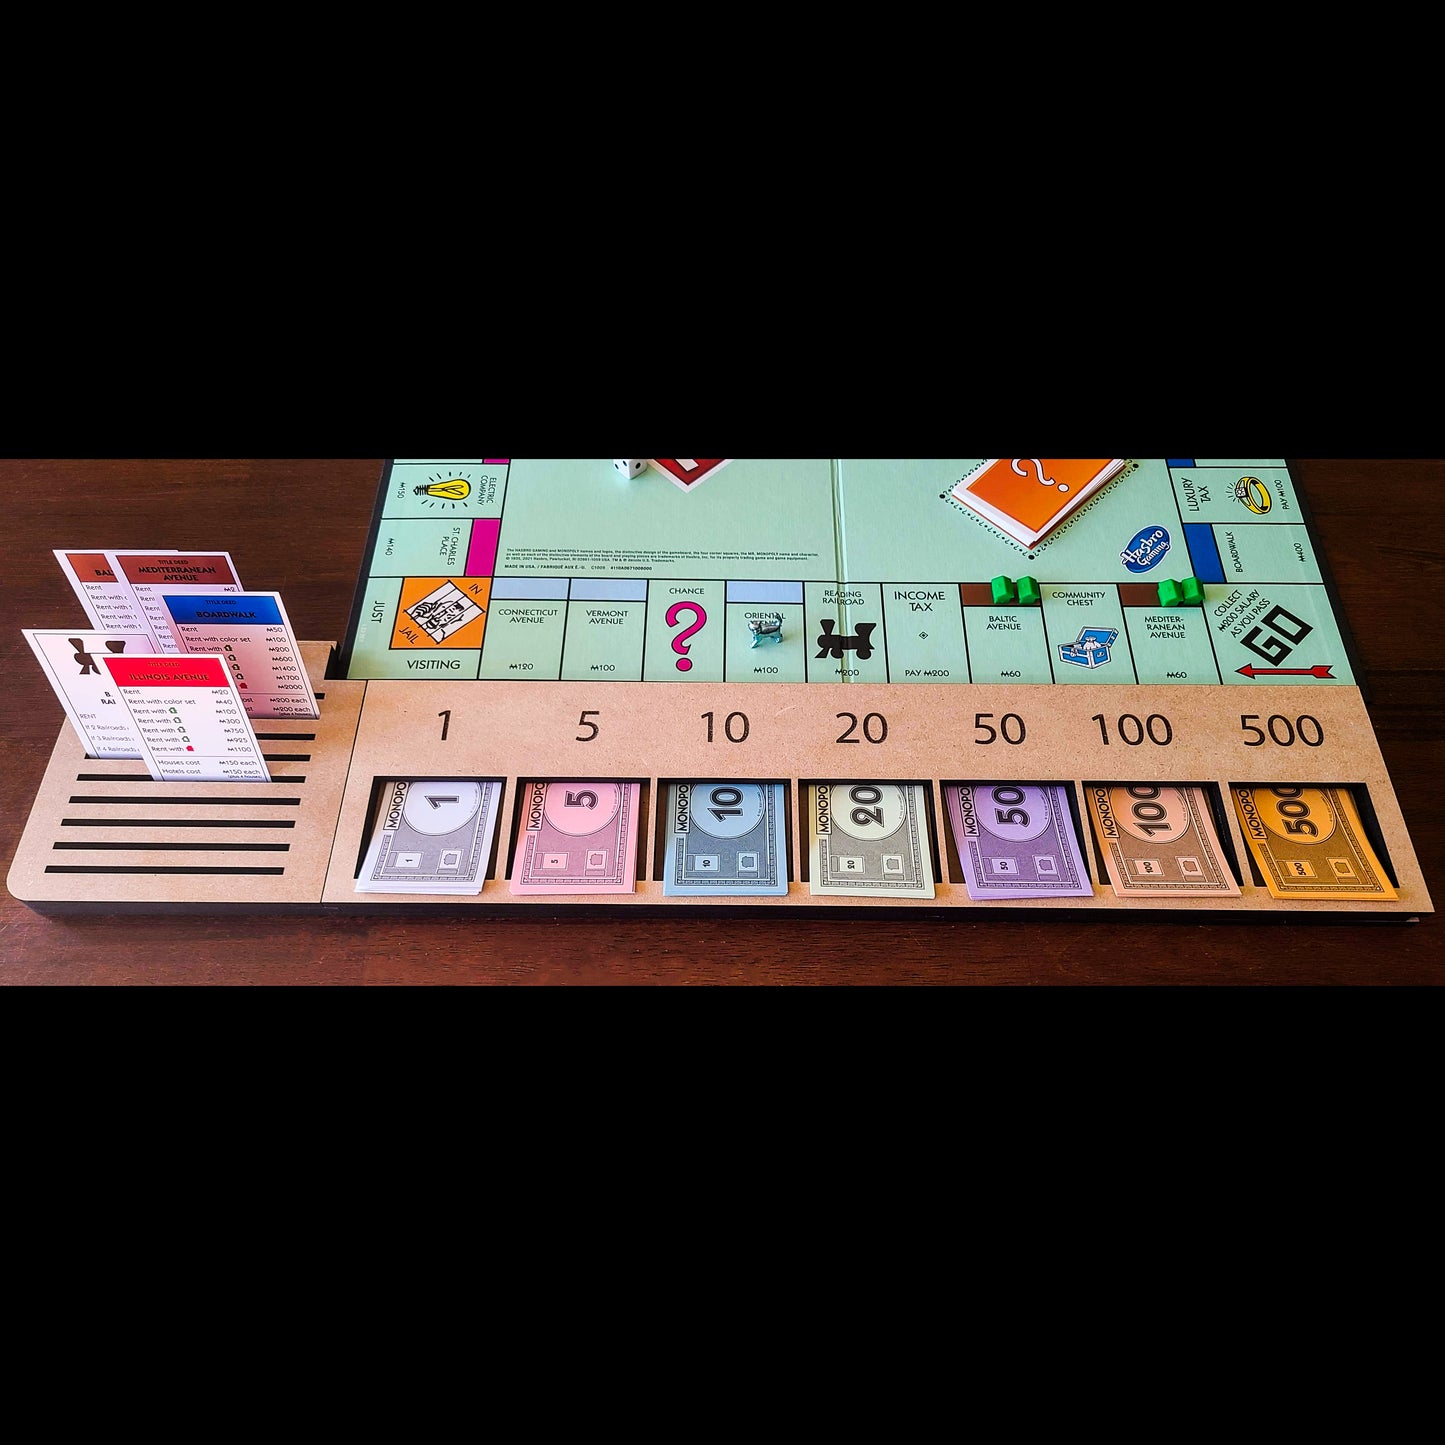 Flat Monopoly Player Organizer